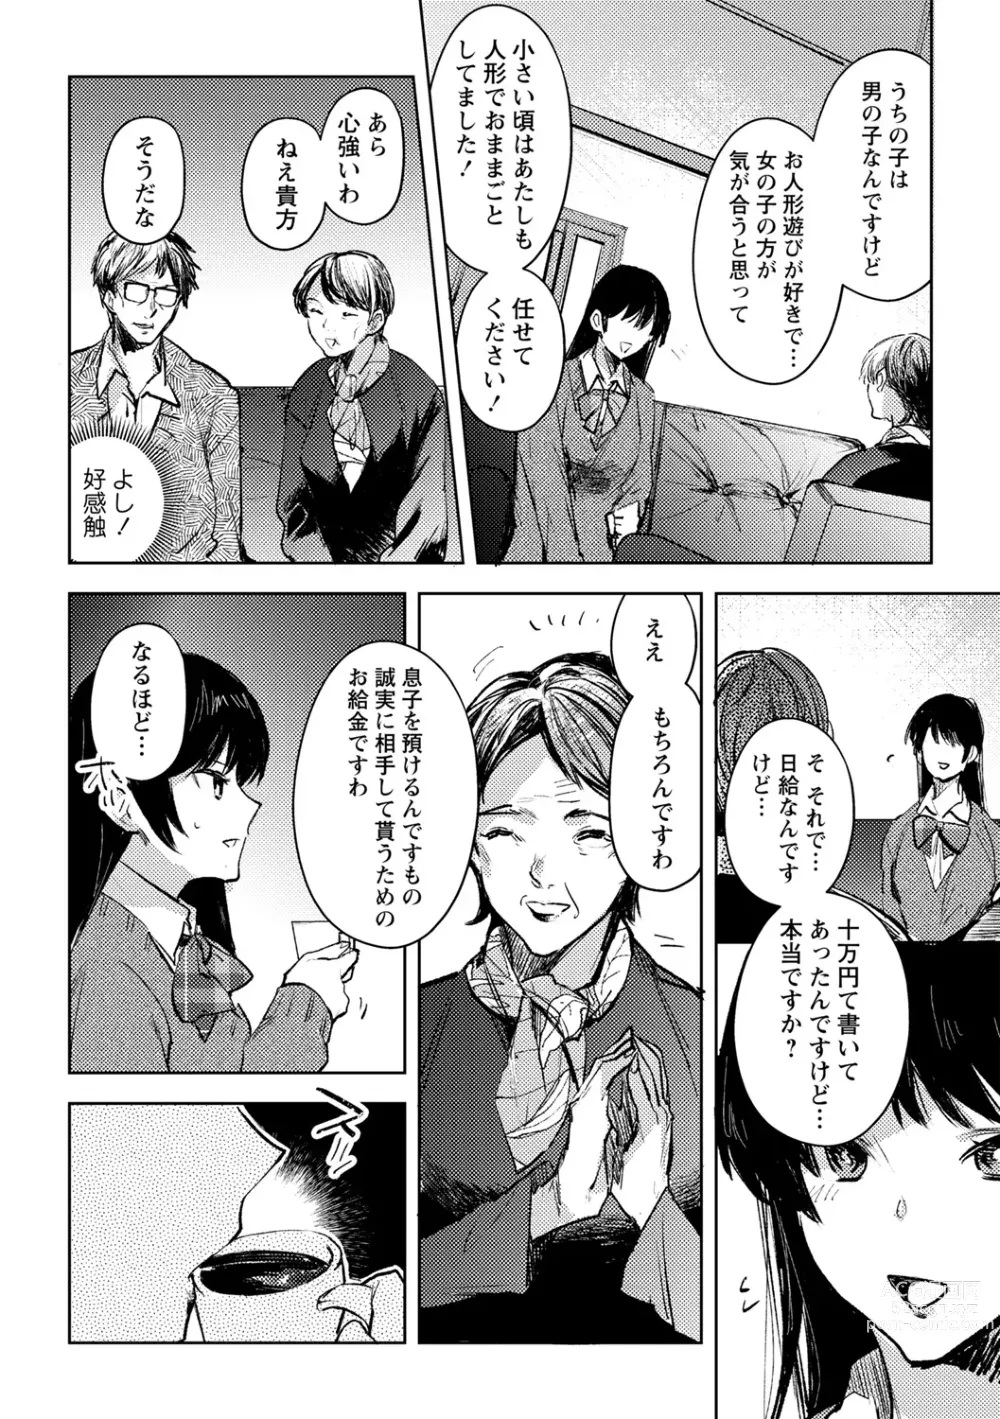 Page 2 of manga Yuuhei  KodoOji no Tou